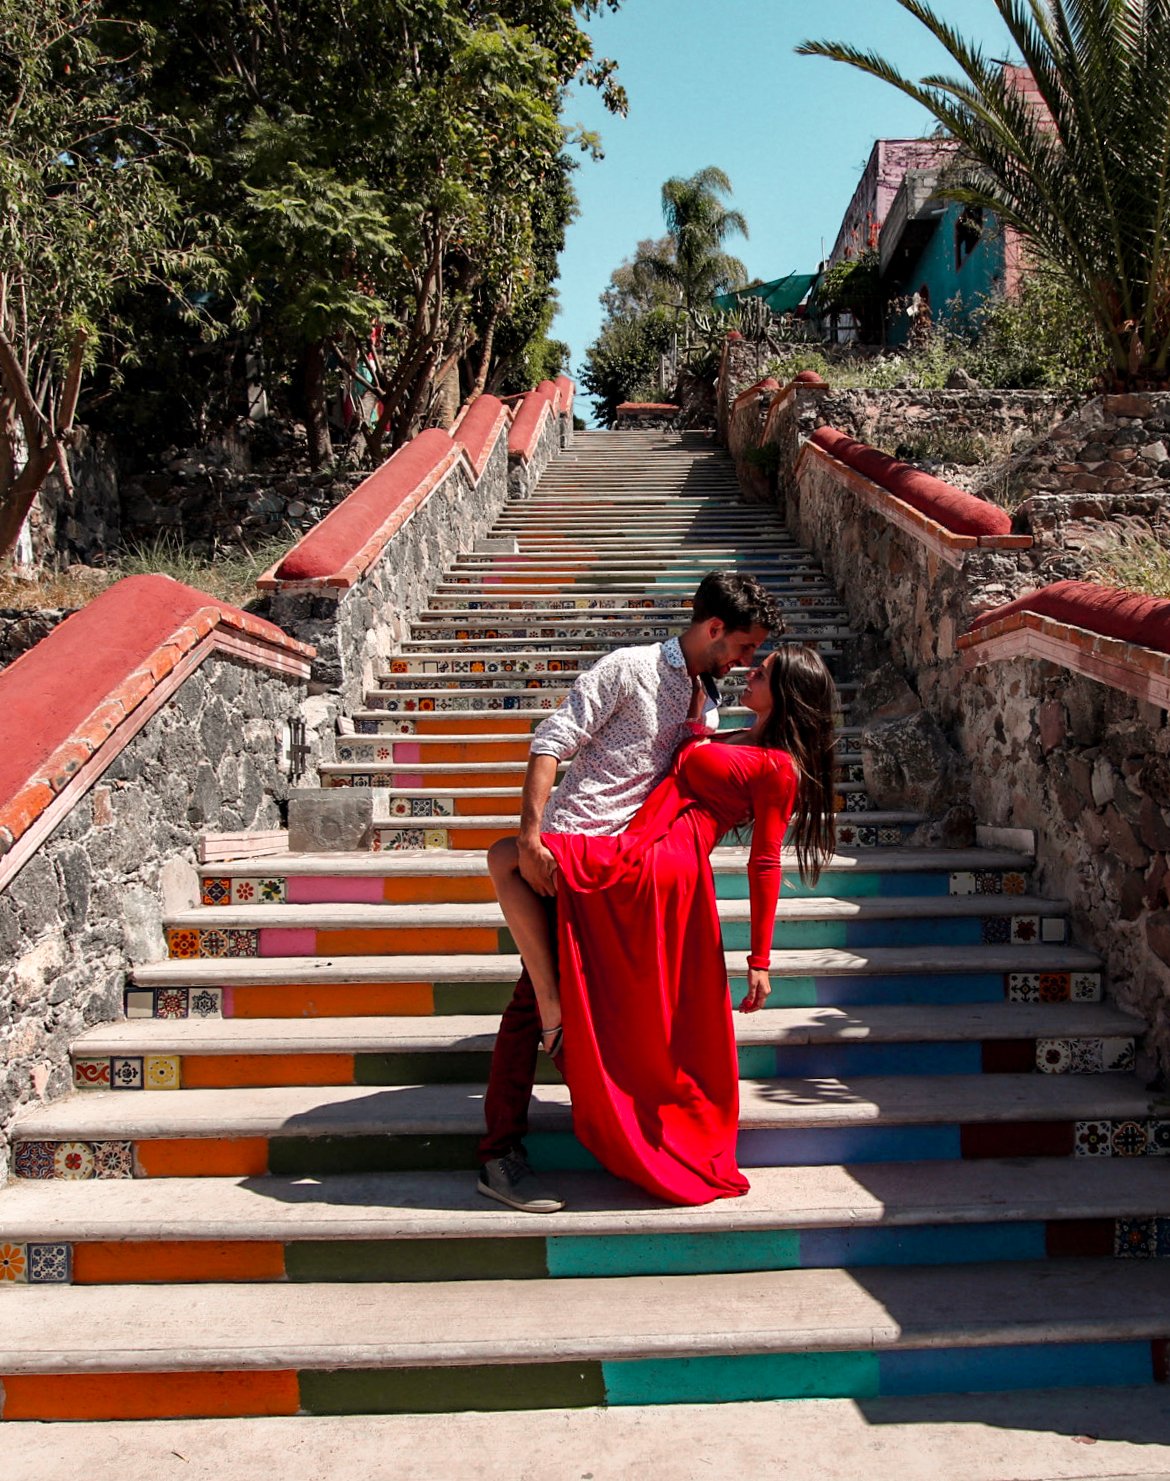 Emiliano Zapata, colorful stairs in Queretaro Mexico